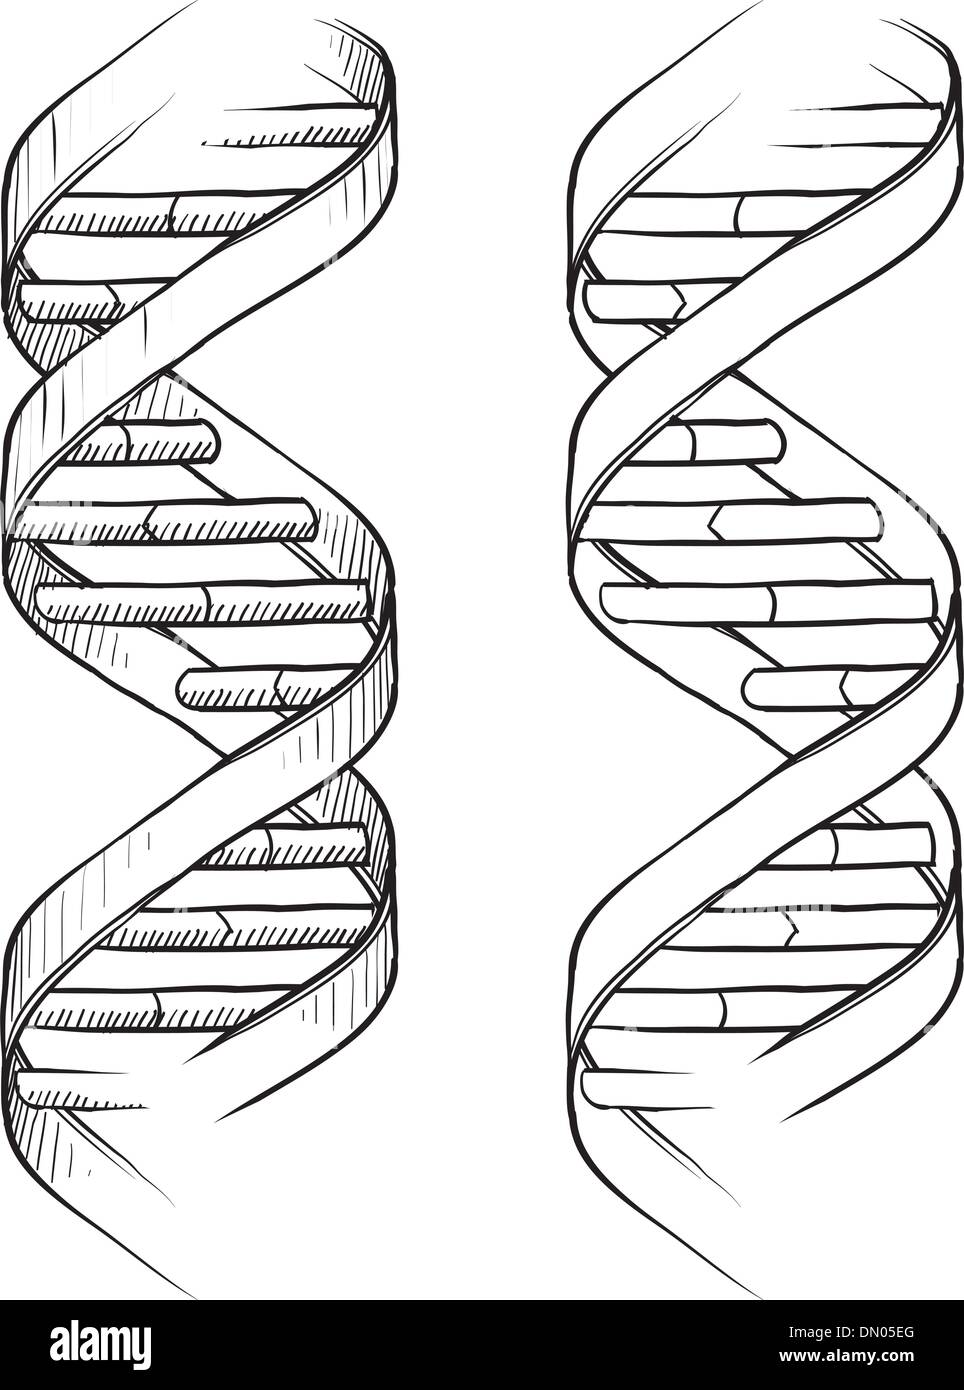 DNA double helix sketch Stock Vector